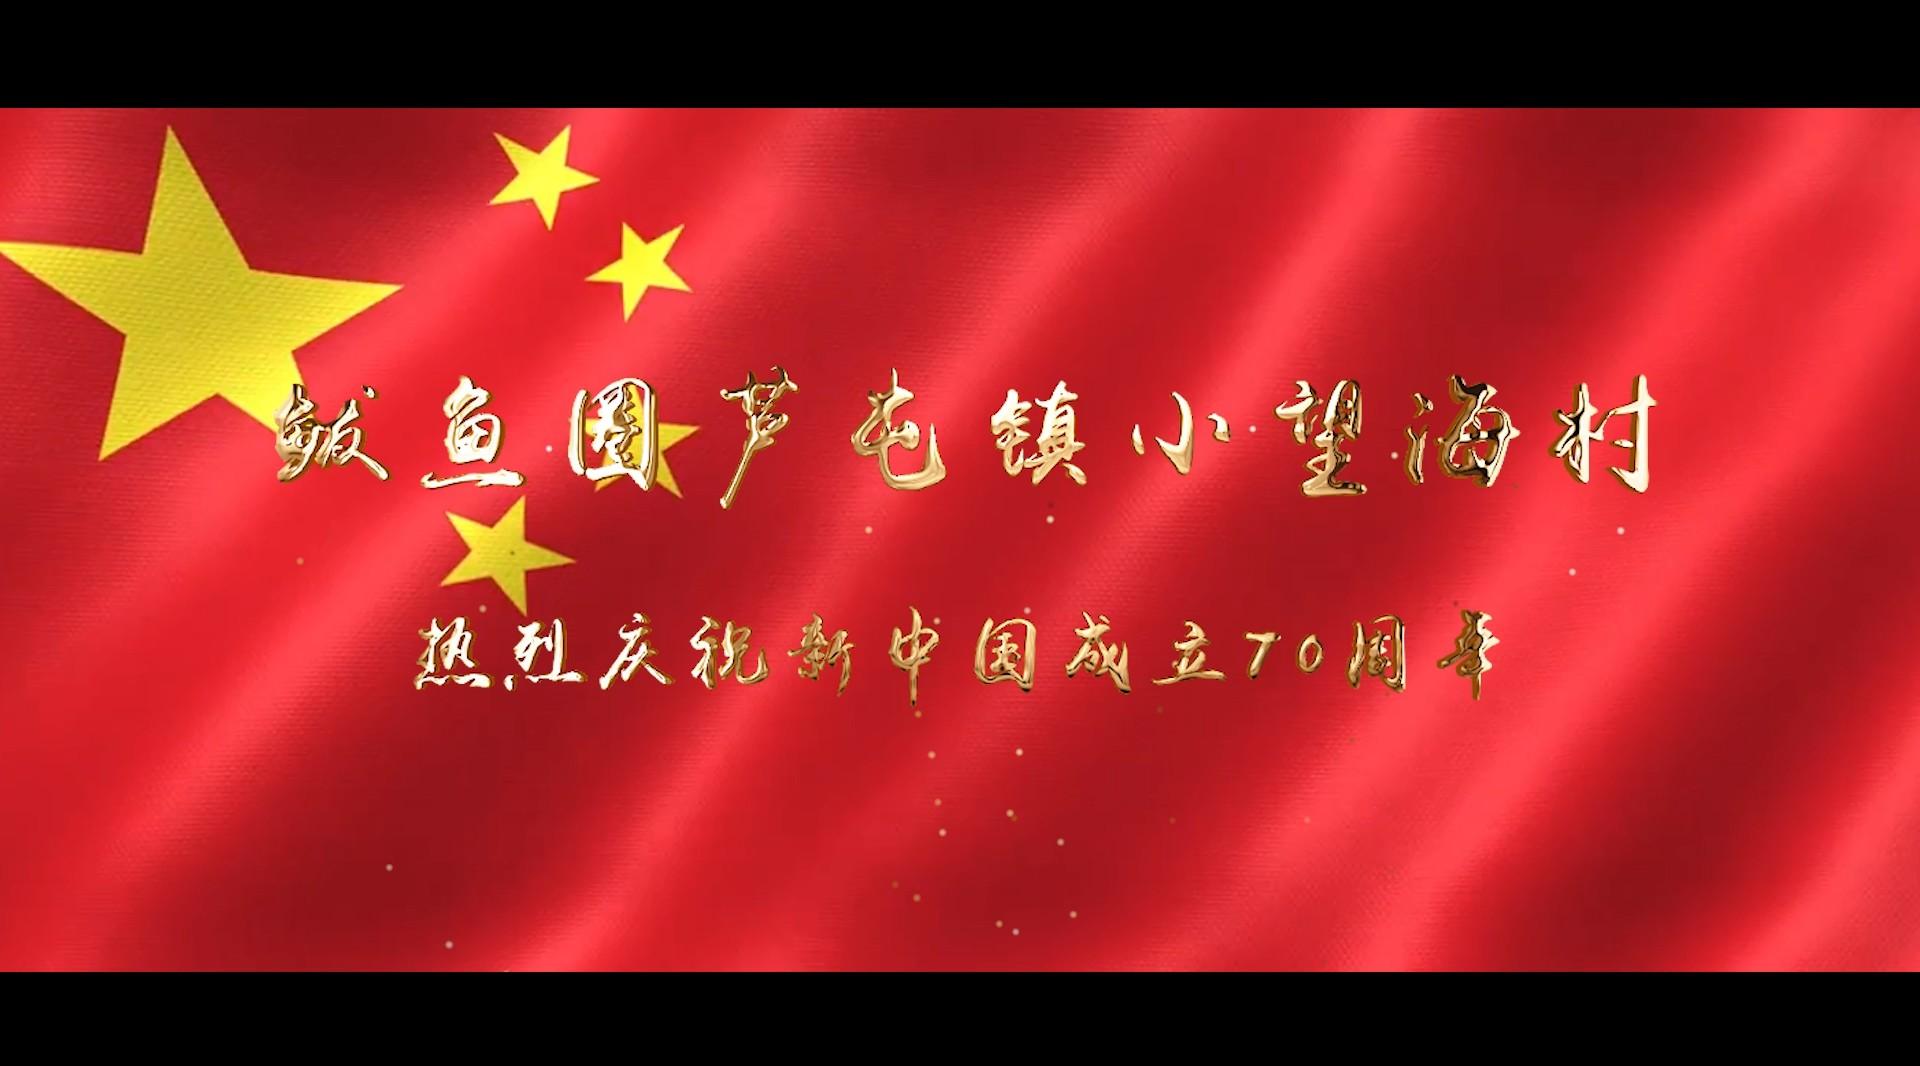 鲅鱼圈芦屯镇小望海村 庆祝新中国成立70周年